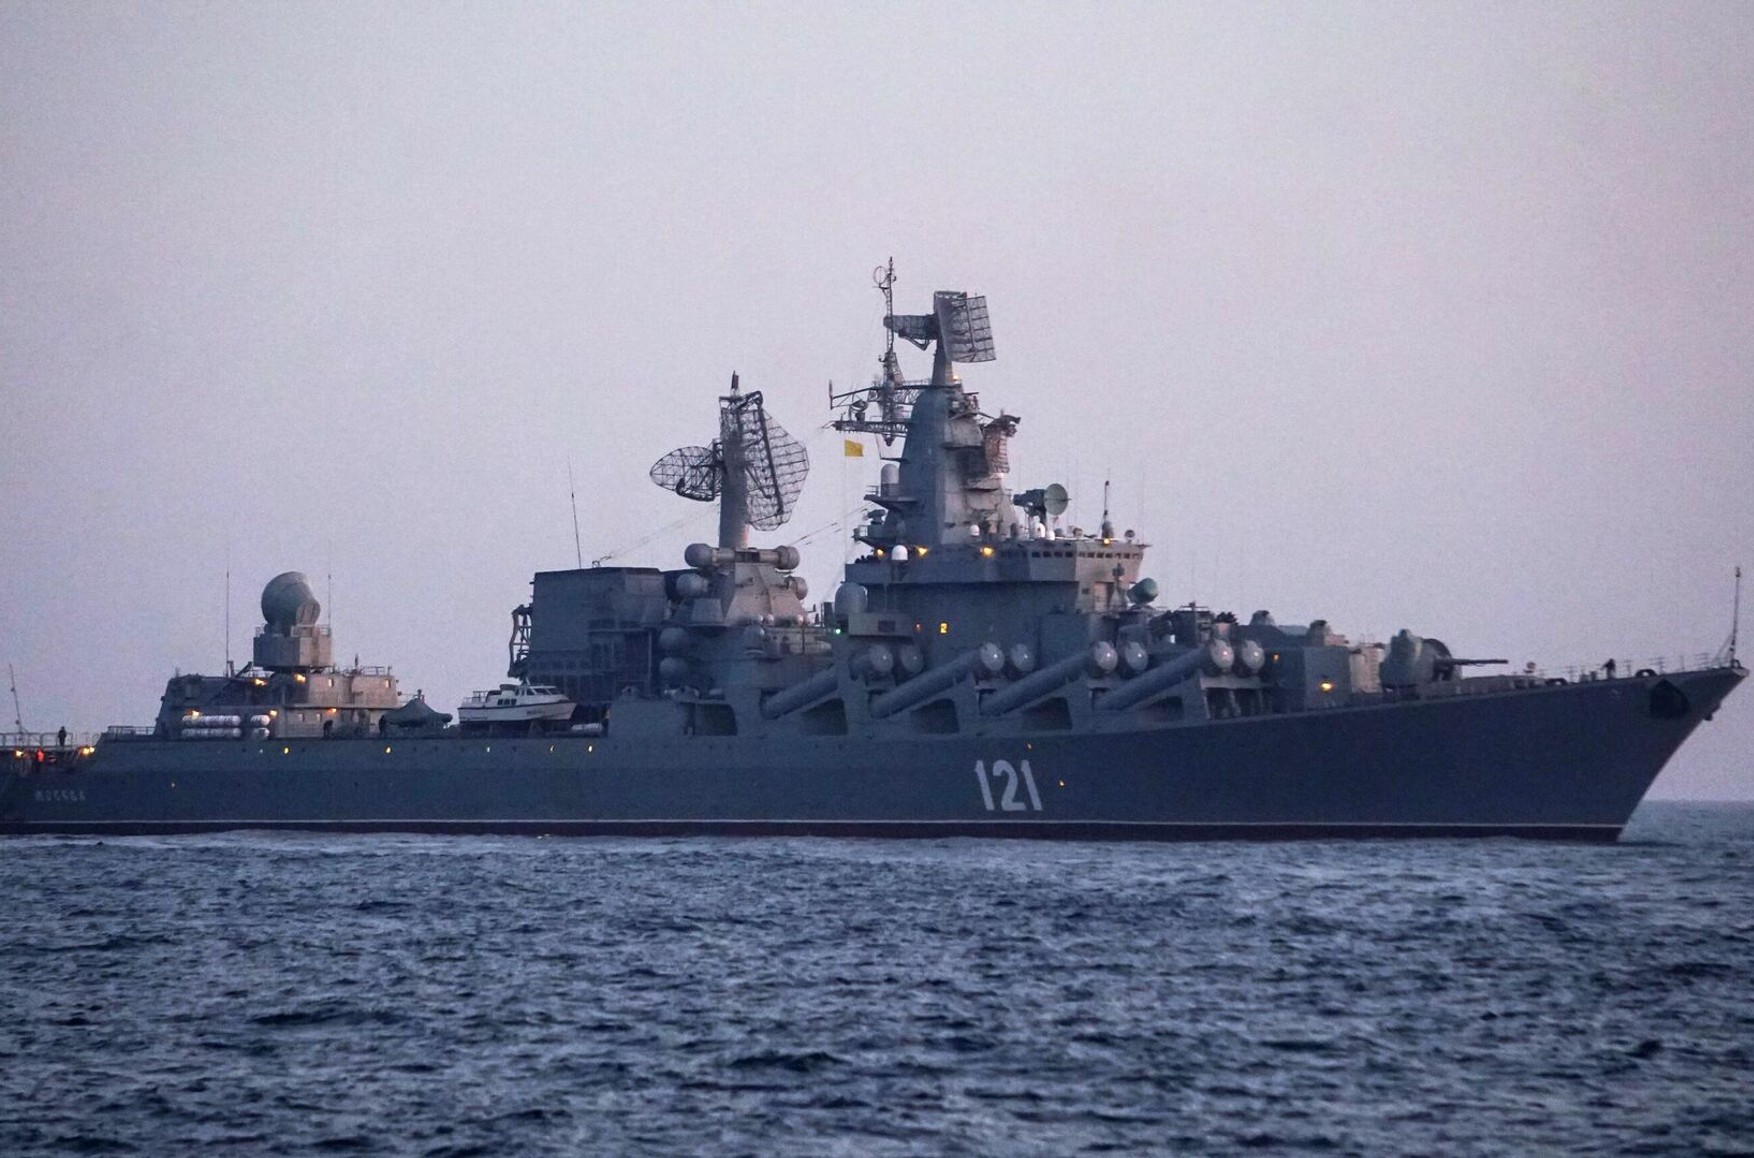 Минобороны сообщило об одном погибшем моряке с крейсера «Москва». Еще 27 человек числятся пропавшими